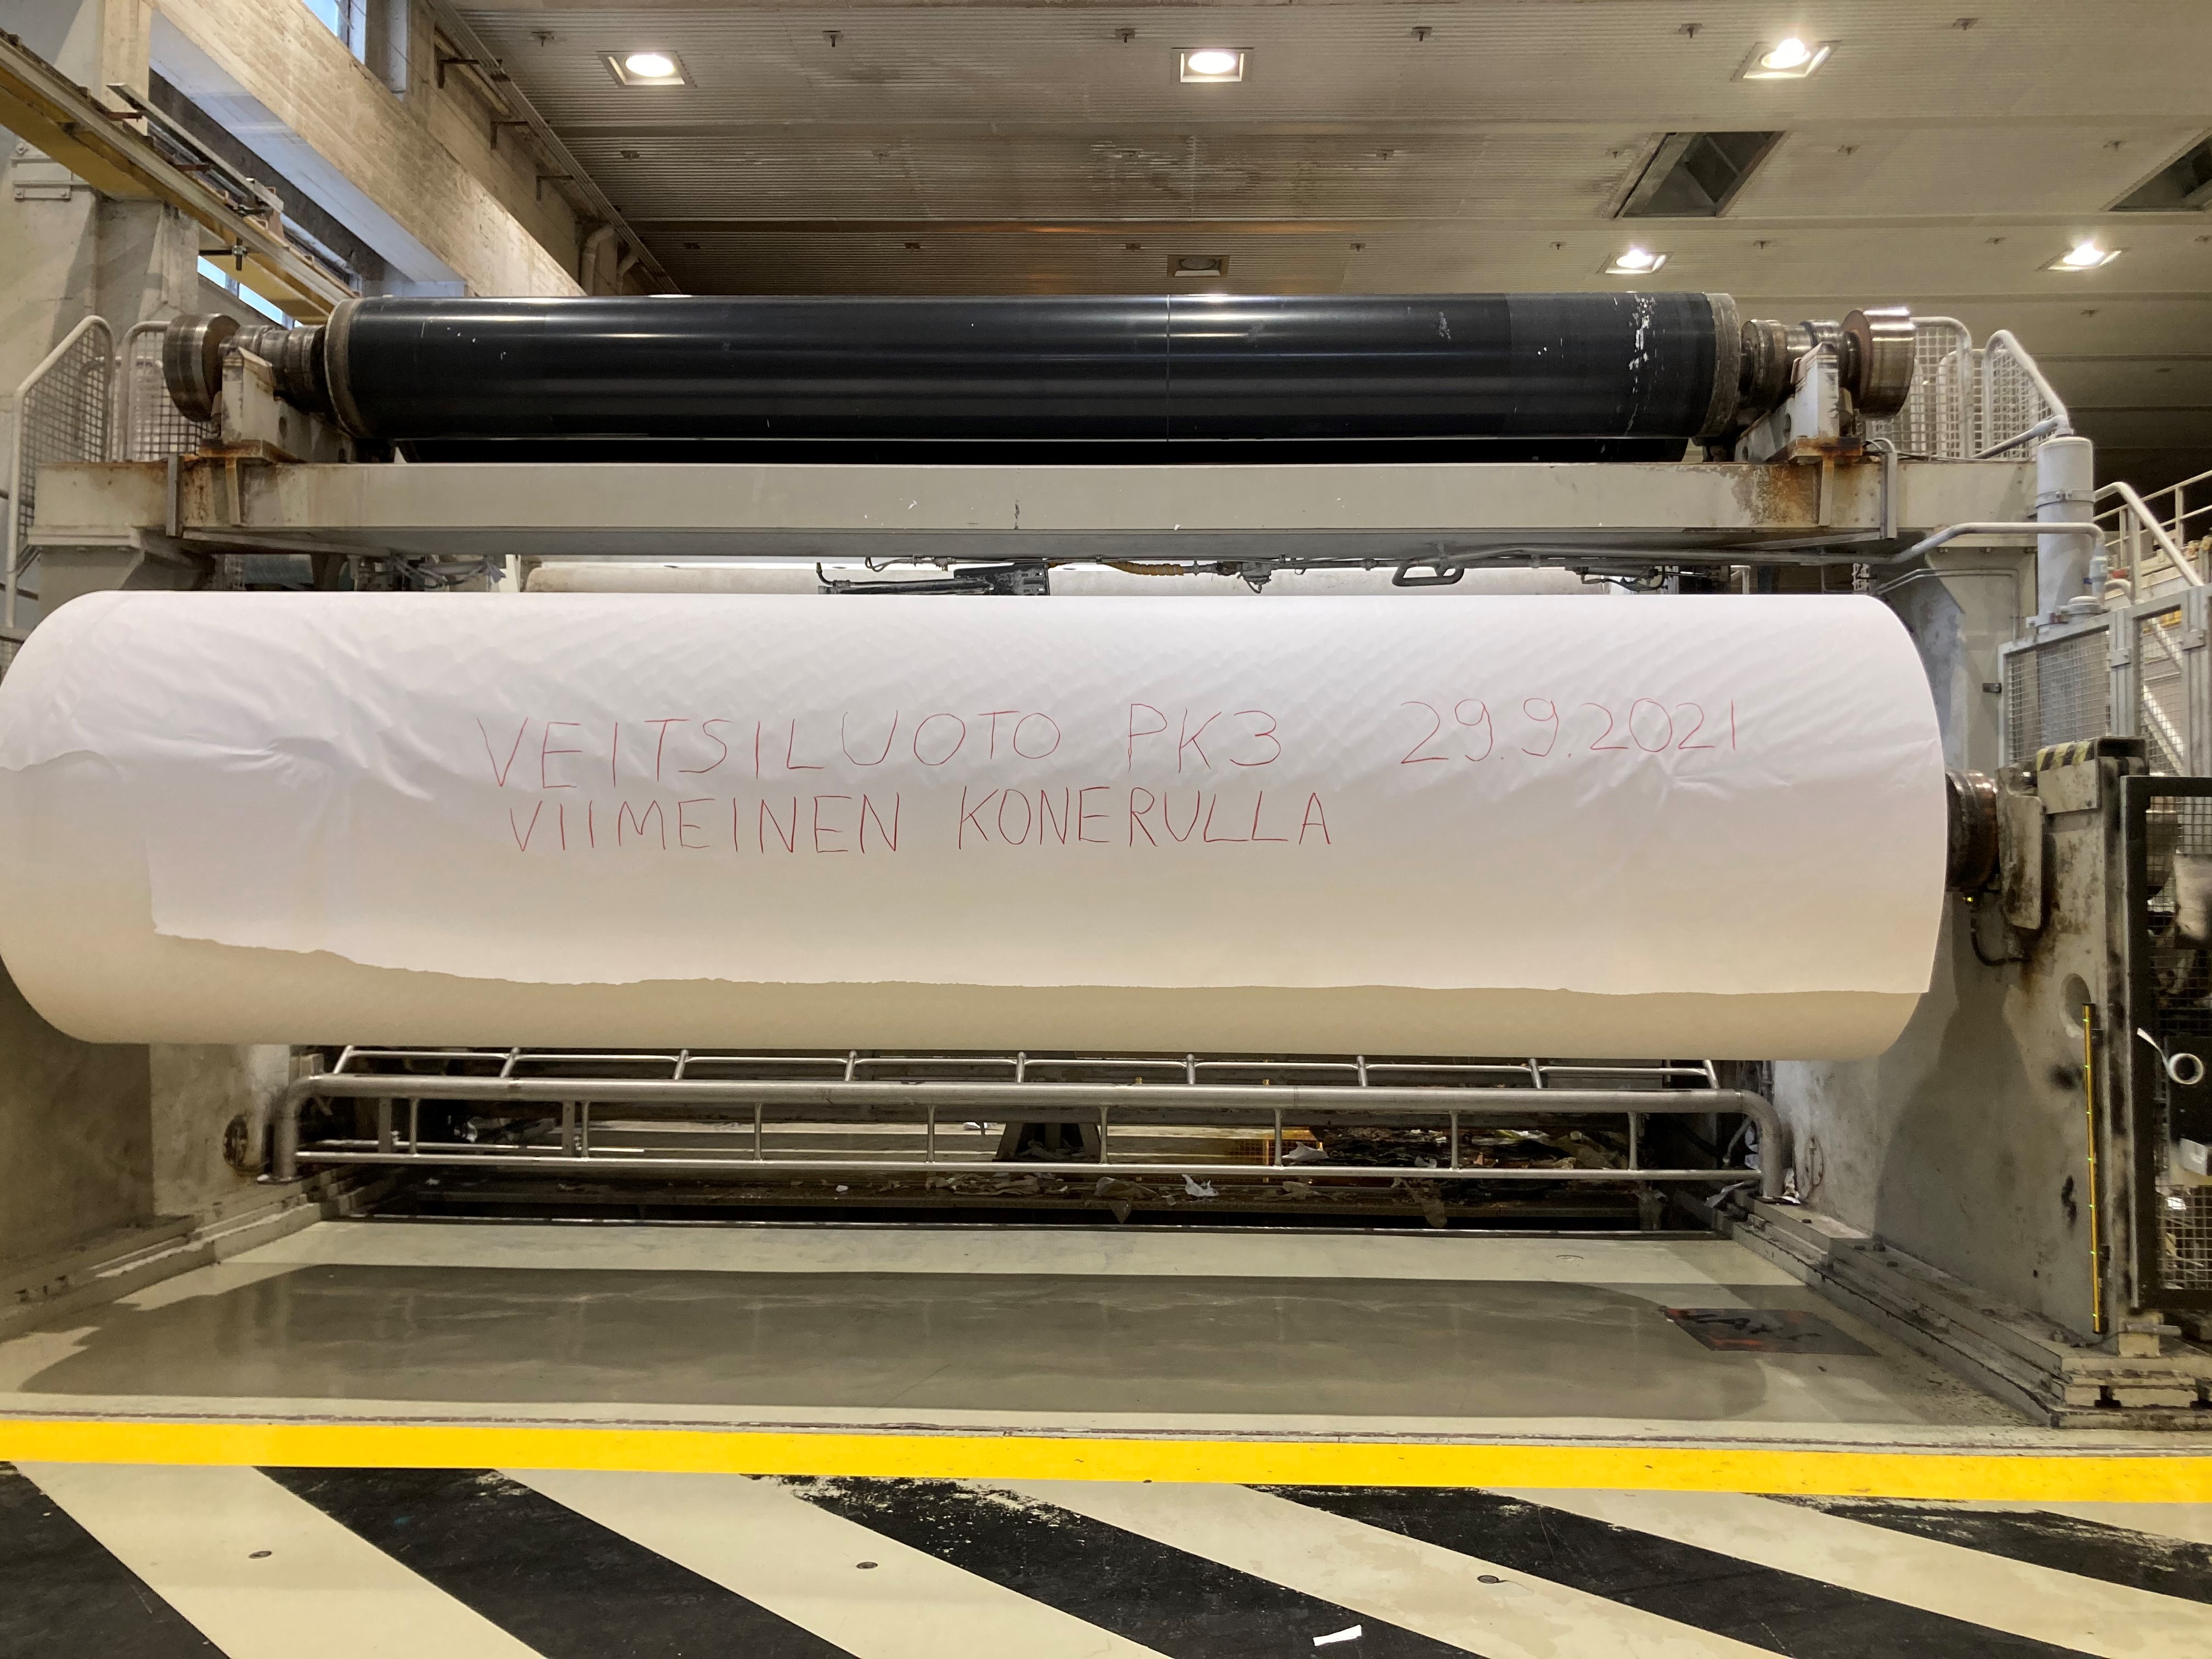 Stora Enson Veitsi­luodon PK3:n viimeinen konerulla valmistui Suomen uusimmasta paperikoneesta 29.9.2021 klo 7.31